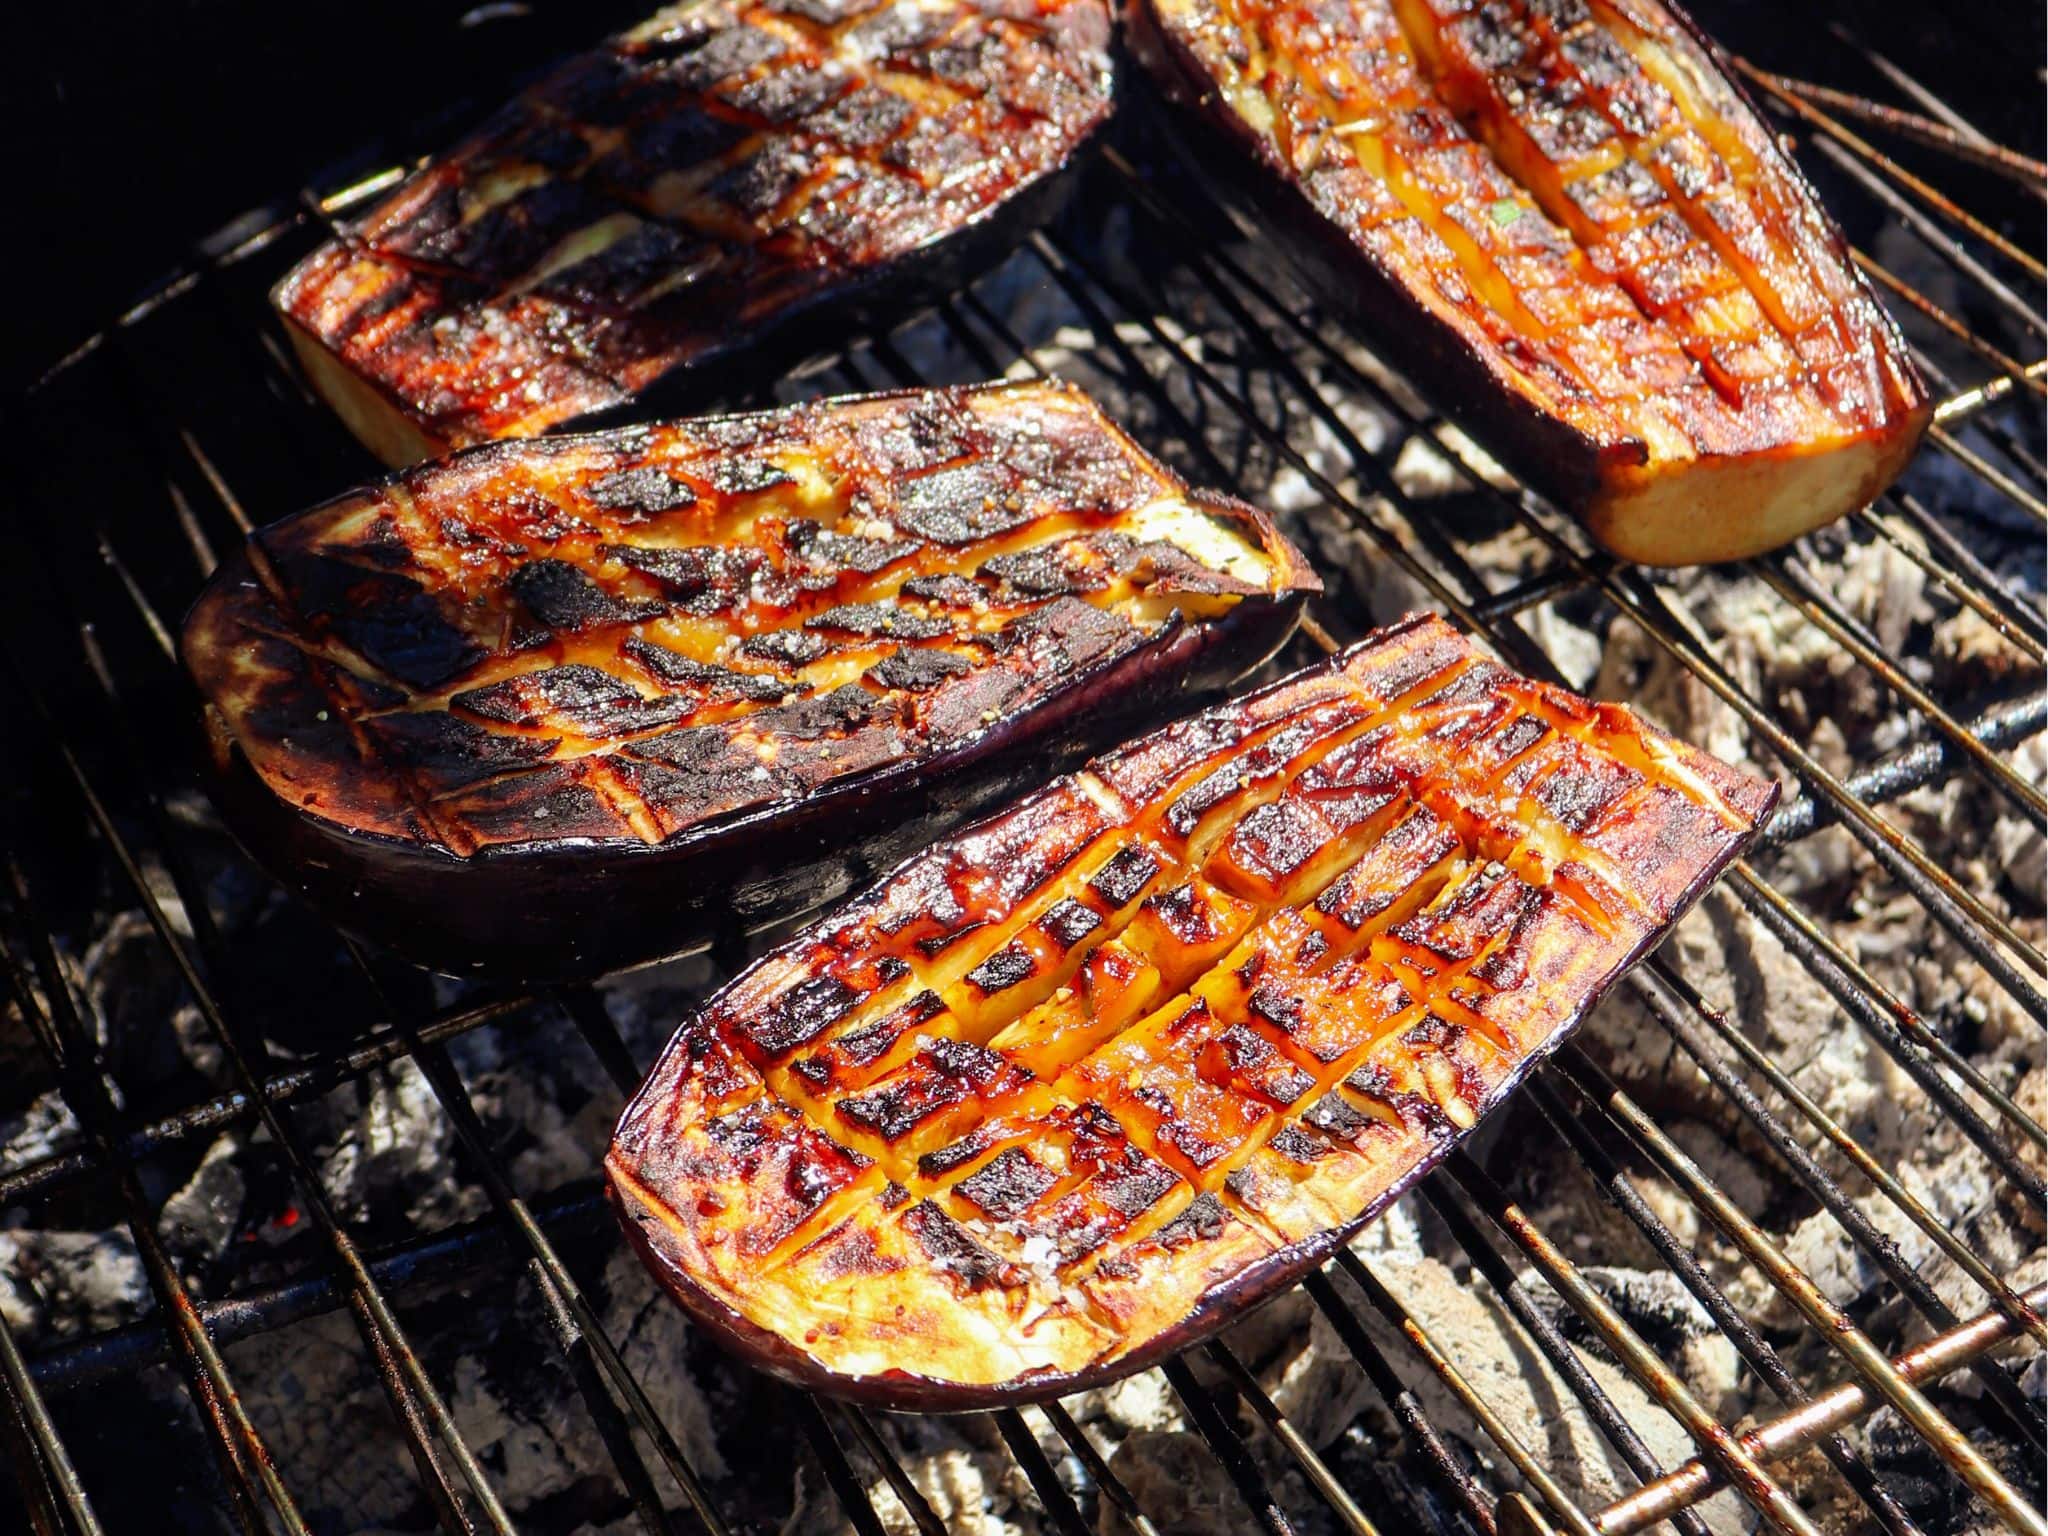 des aubergines grillées au barbecue pour obtenir un goût fumé, idéal en été